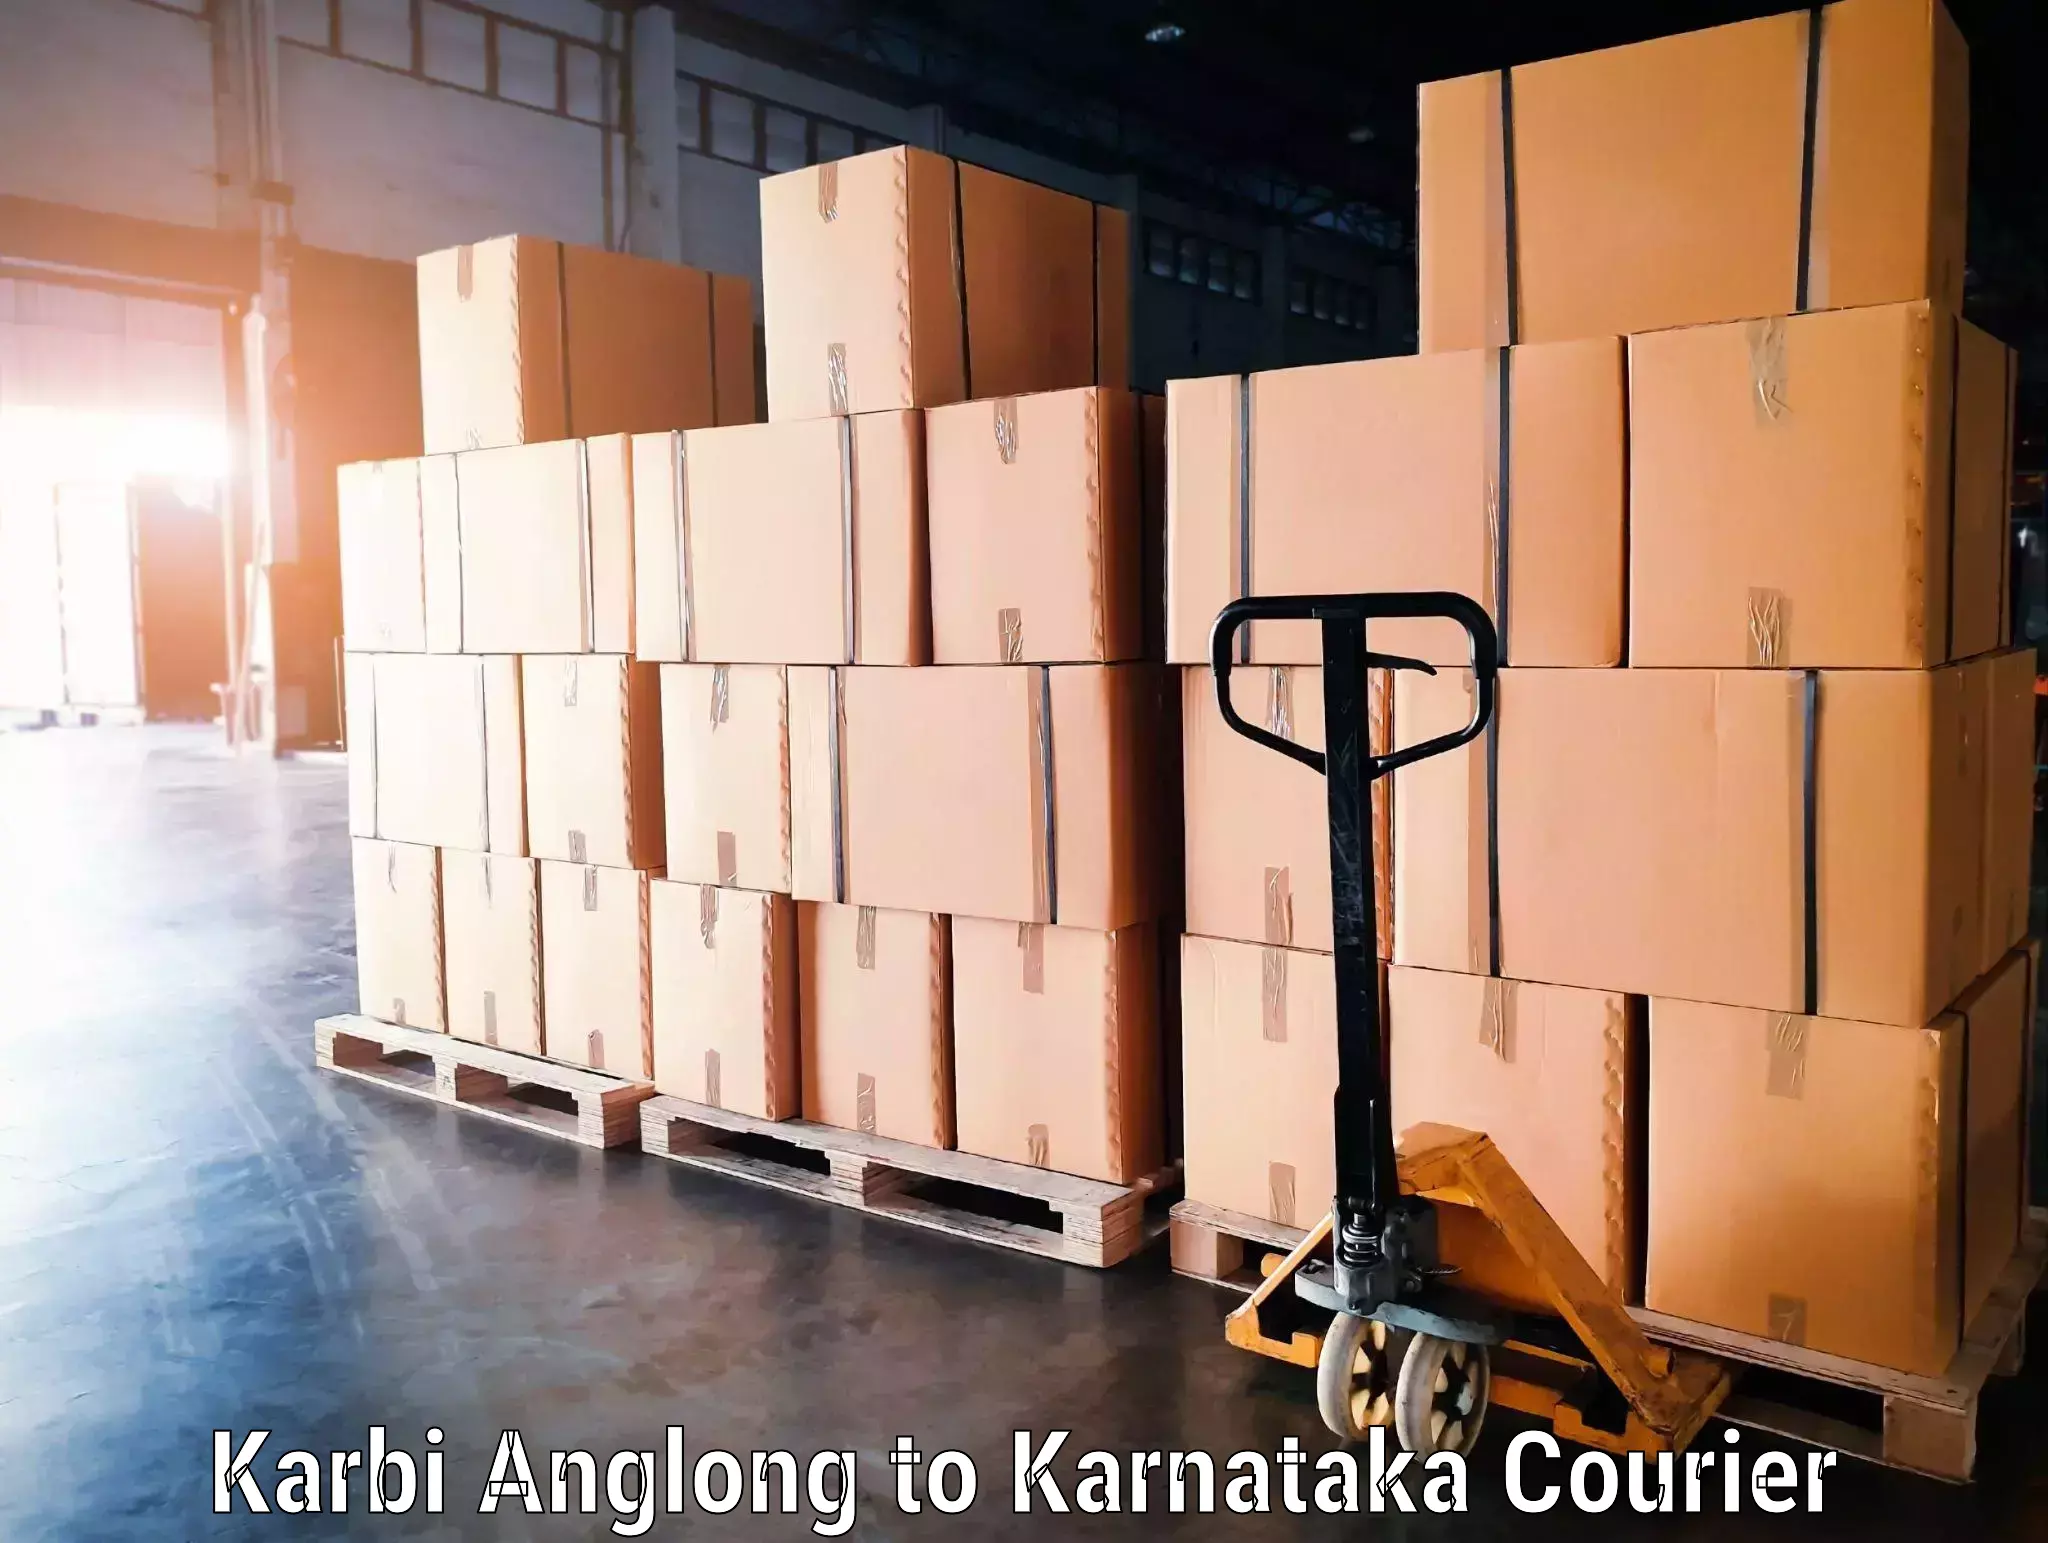 Baggage delivery solutions Karbi Anglong to Yadgiri